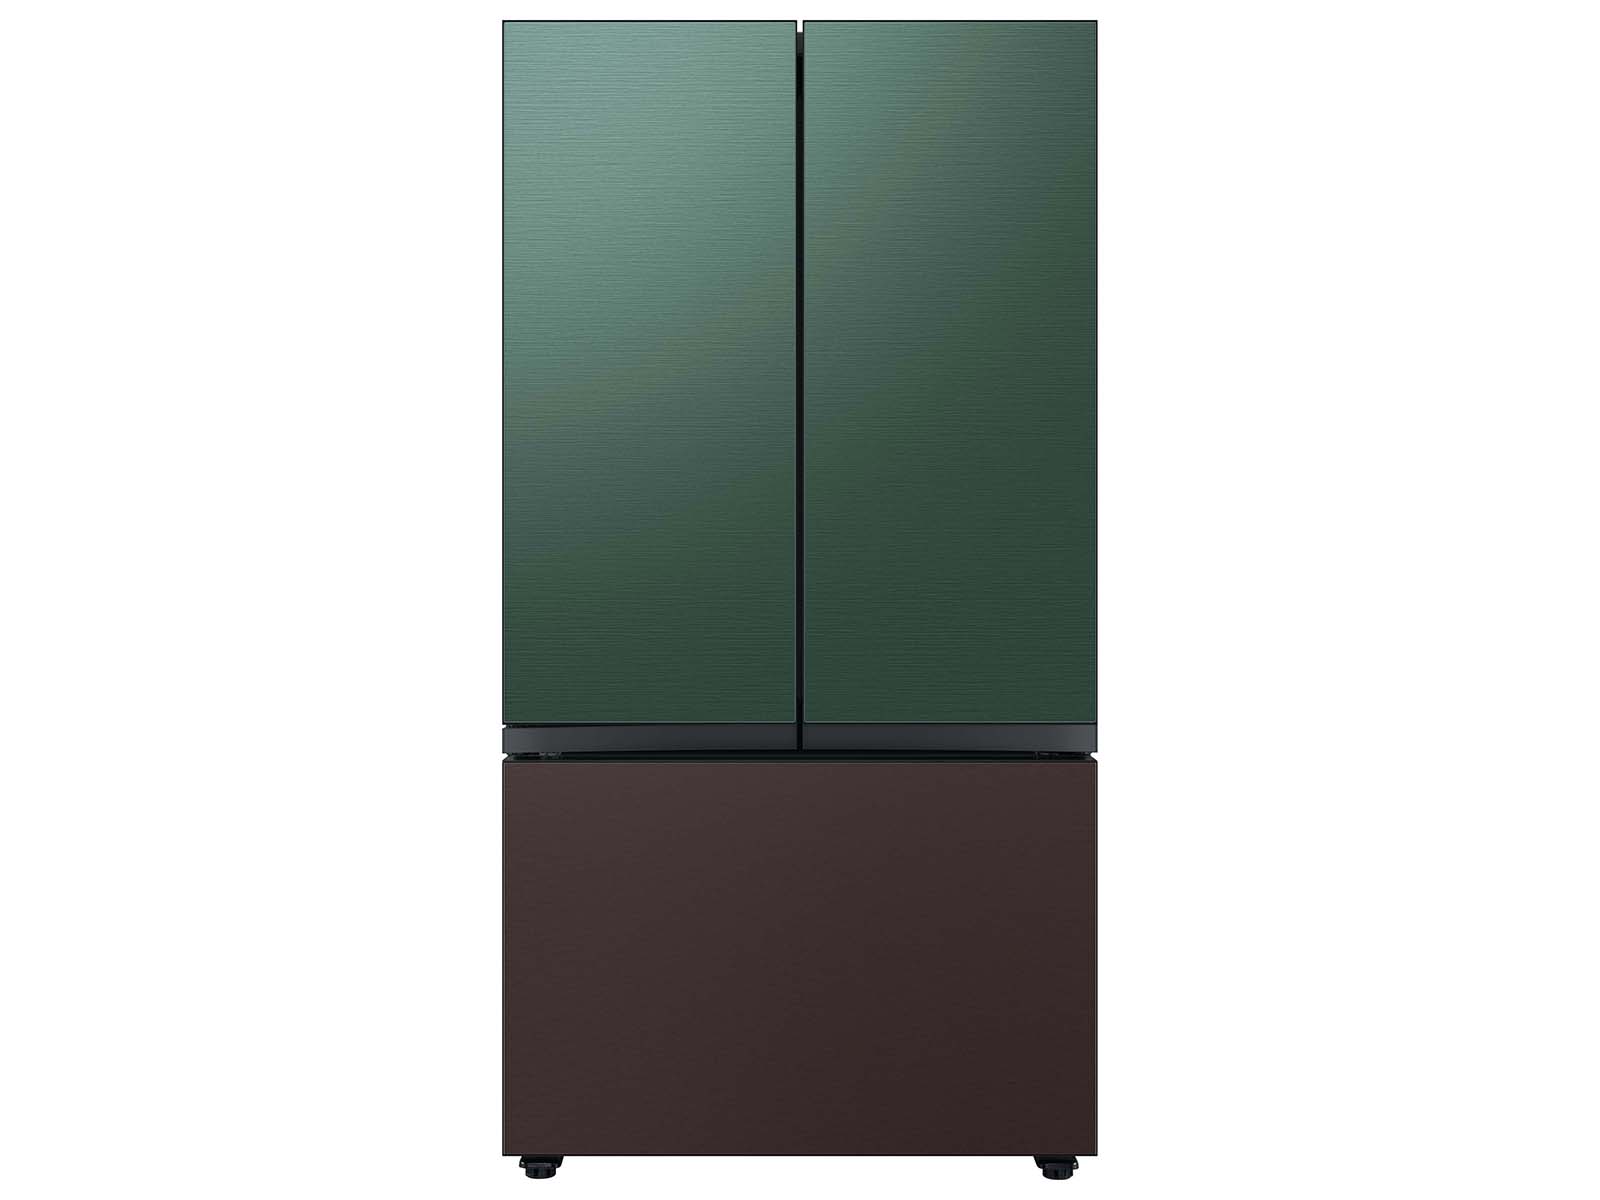 Thumbnail image of Bespoke 3-Door French Door Refrigerator Panel in Tuscan Steel - Bottom Panel